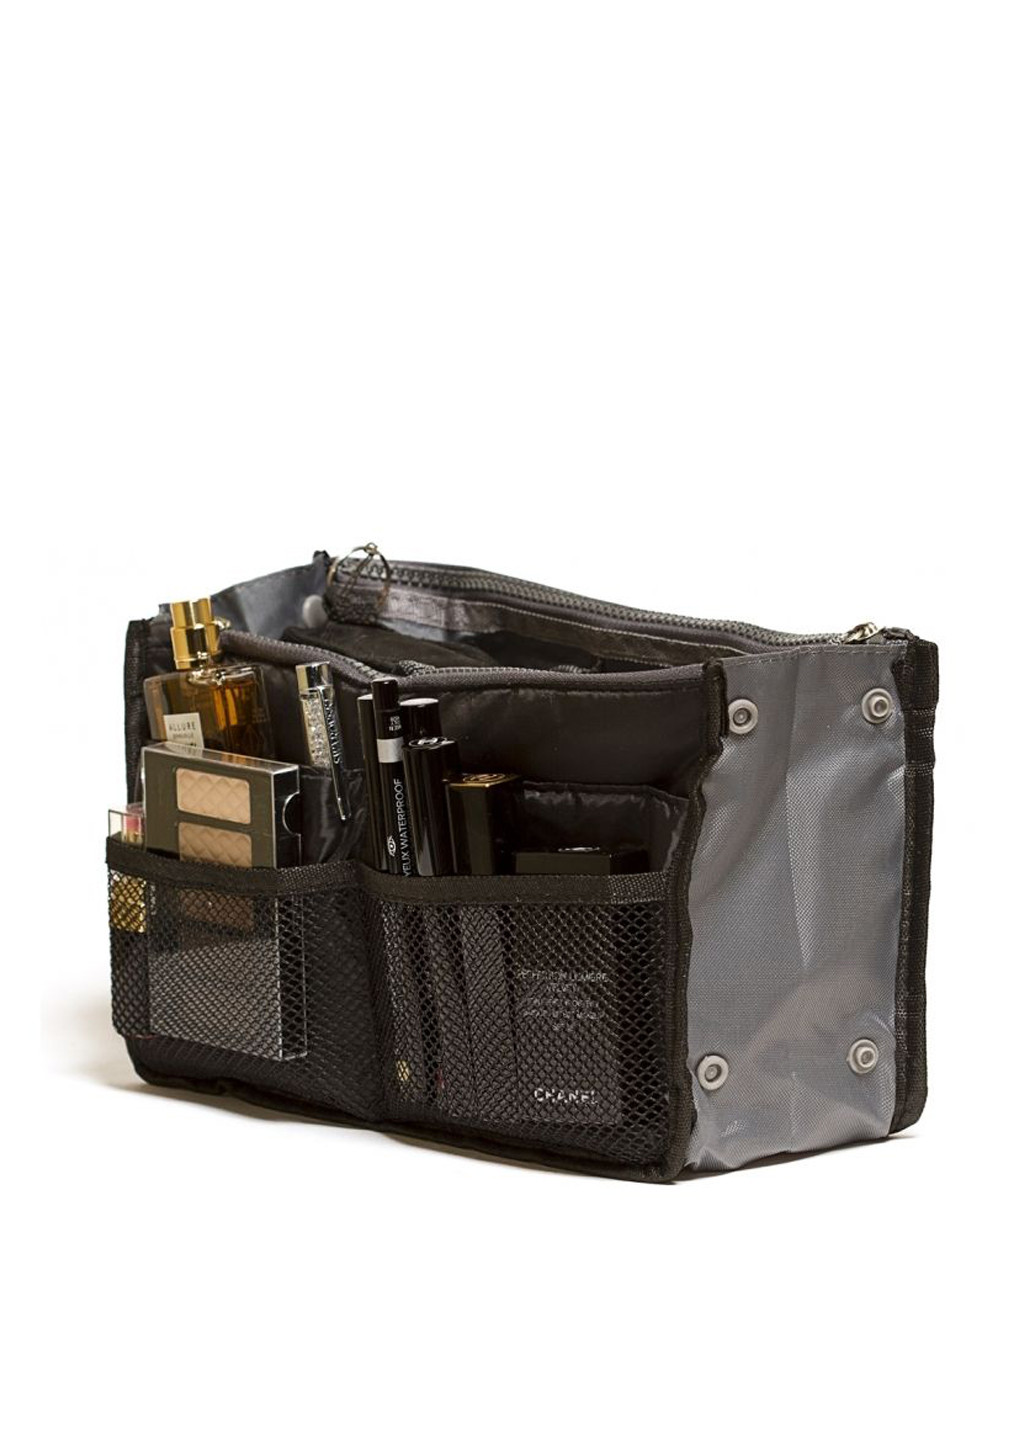 Косметичка Bag in bag maxi Black, 28х17x8,5 см Forus (18162726)